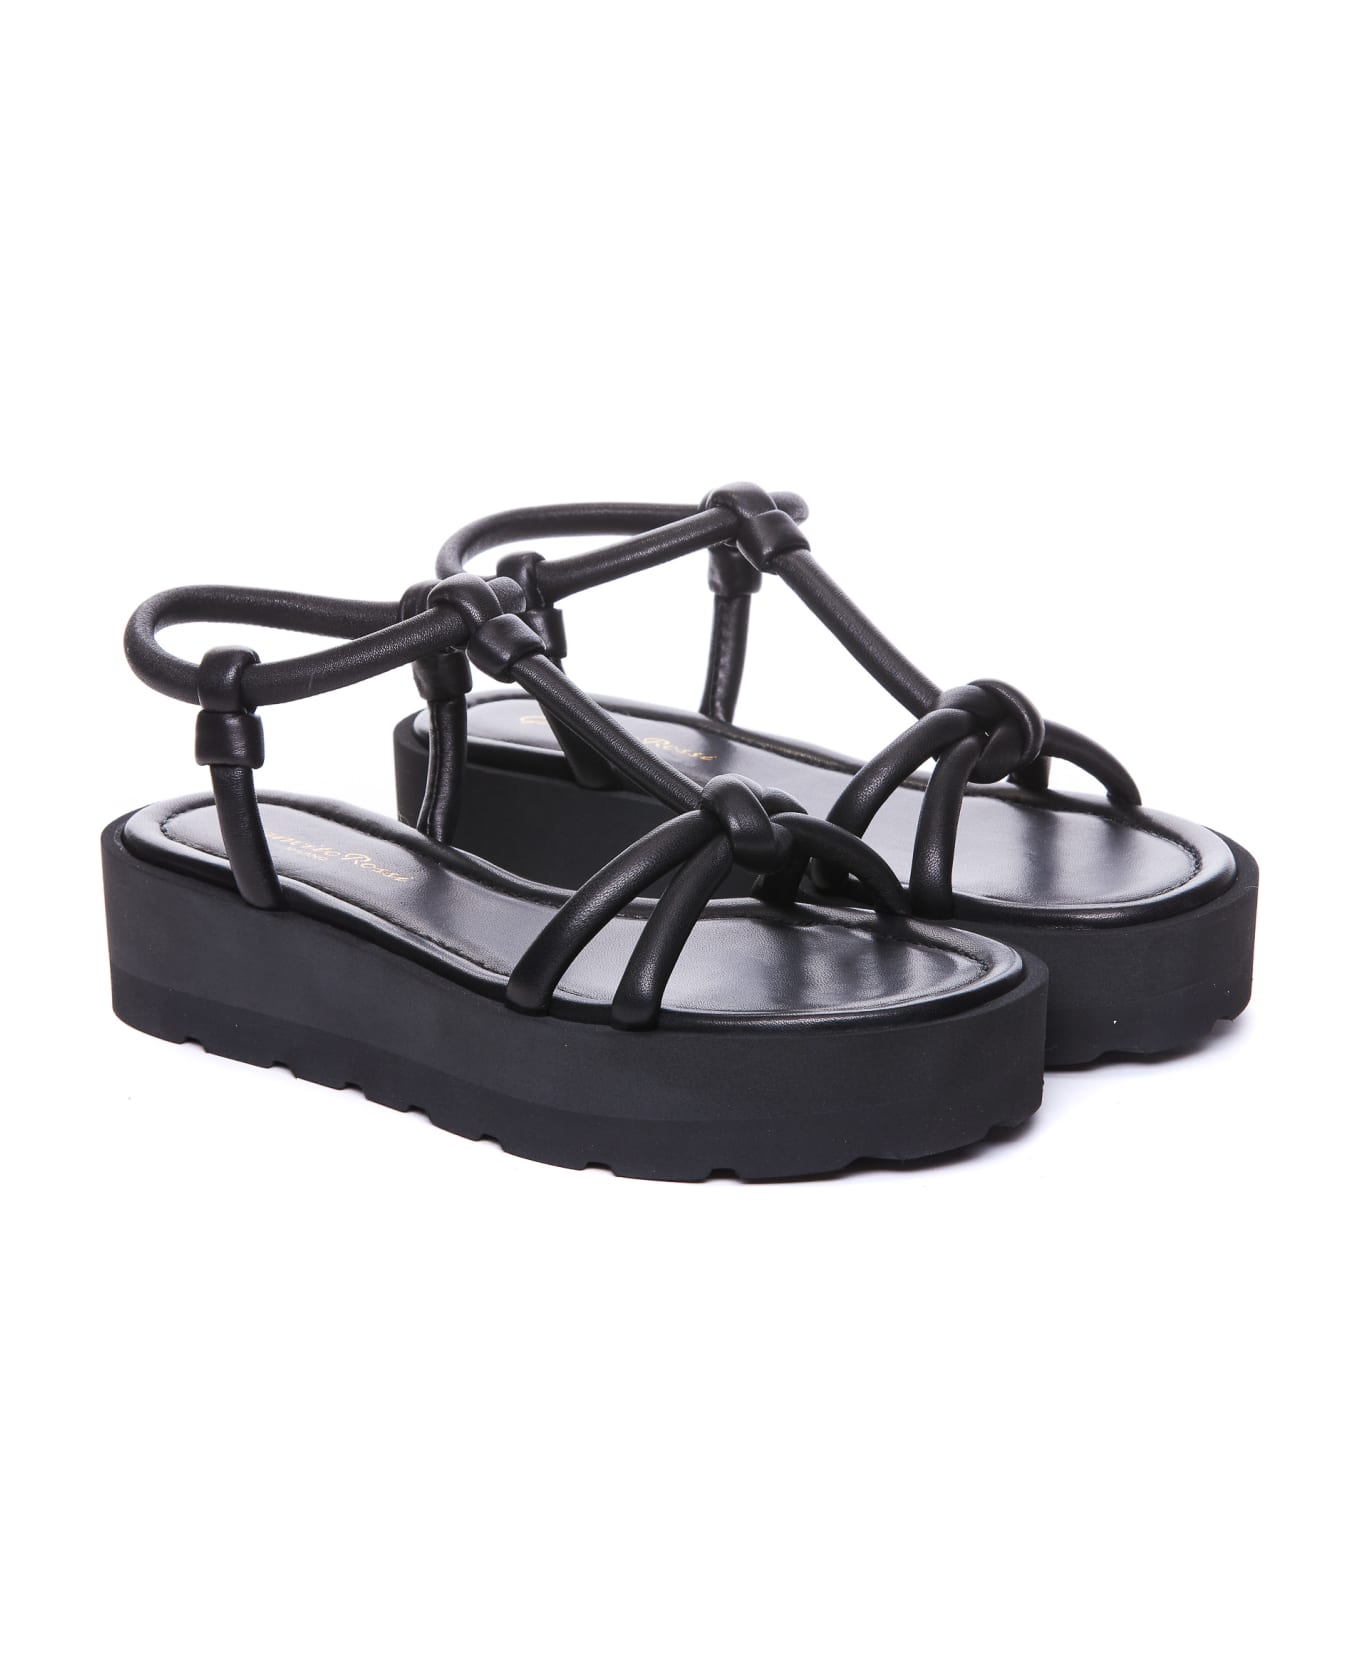 Gianvito Rossi Platform Sandals - Black